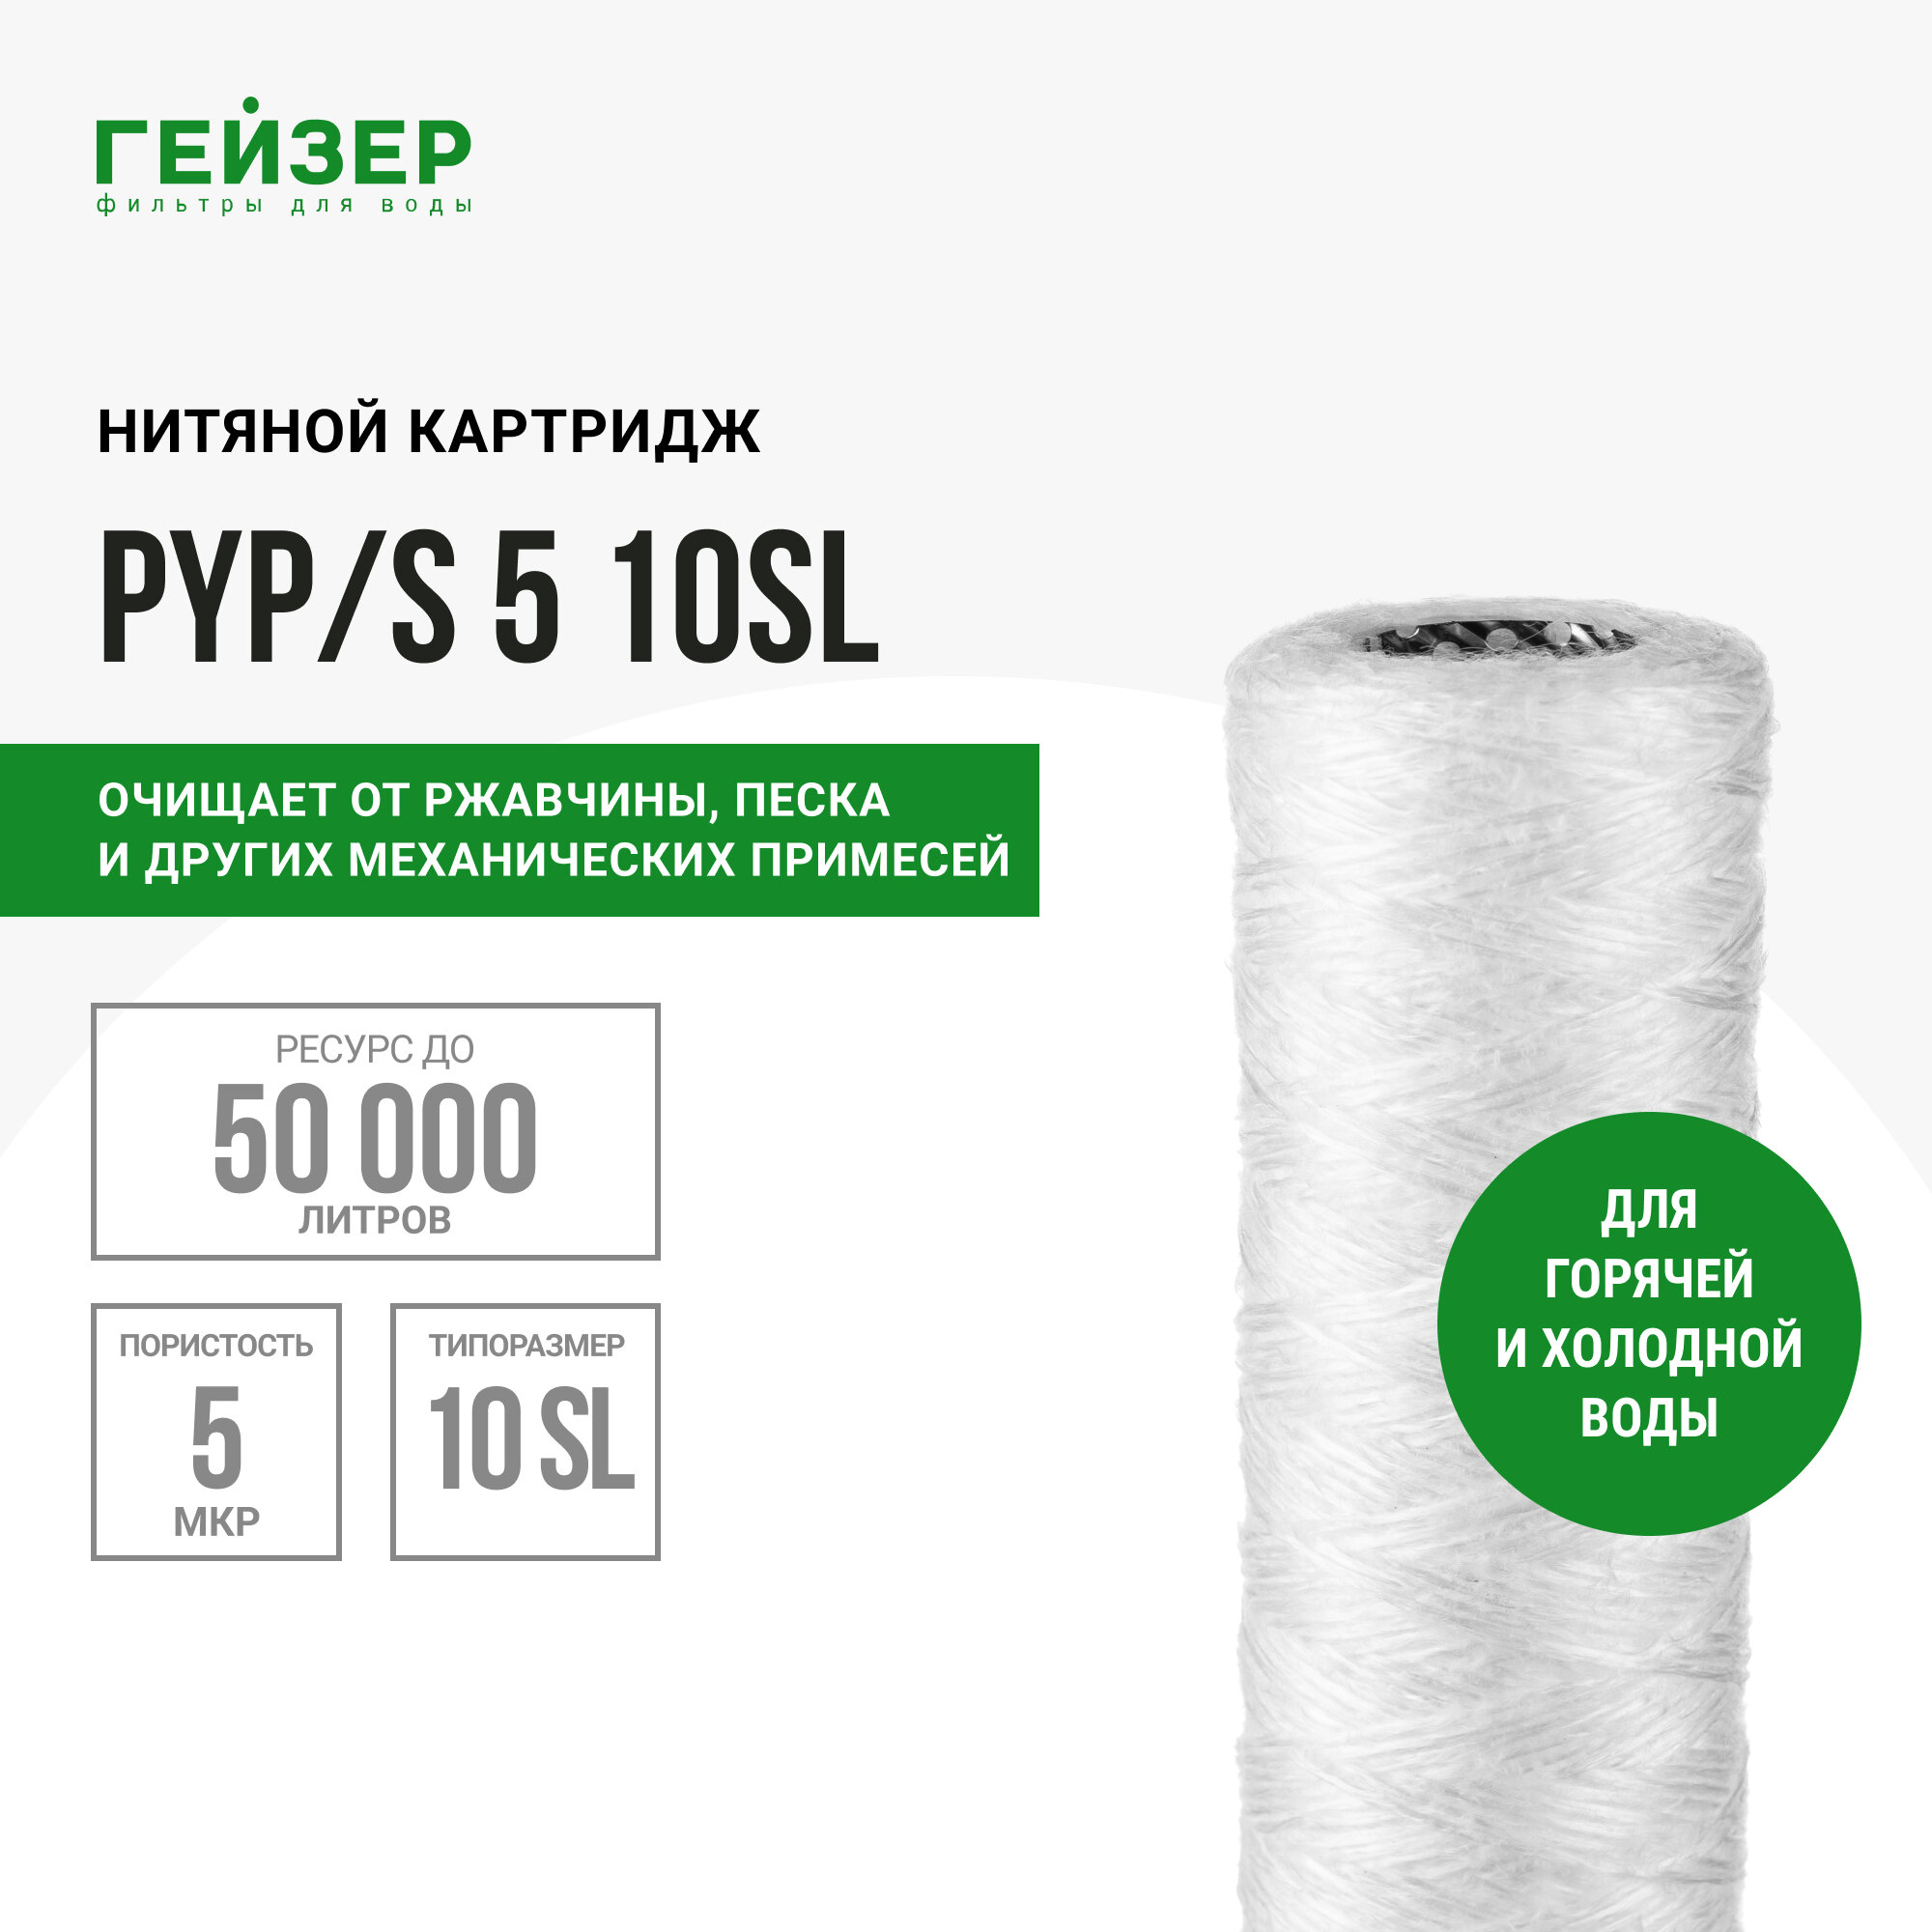 ГЕЙЗЕР Картридж PYP/S 5-10SL для холодной и горячей воды